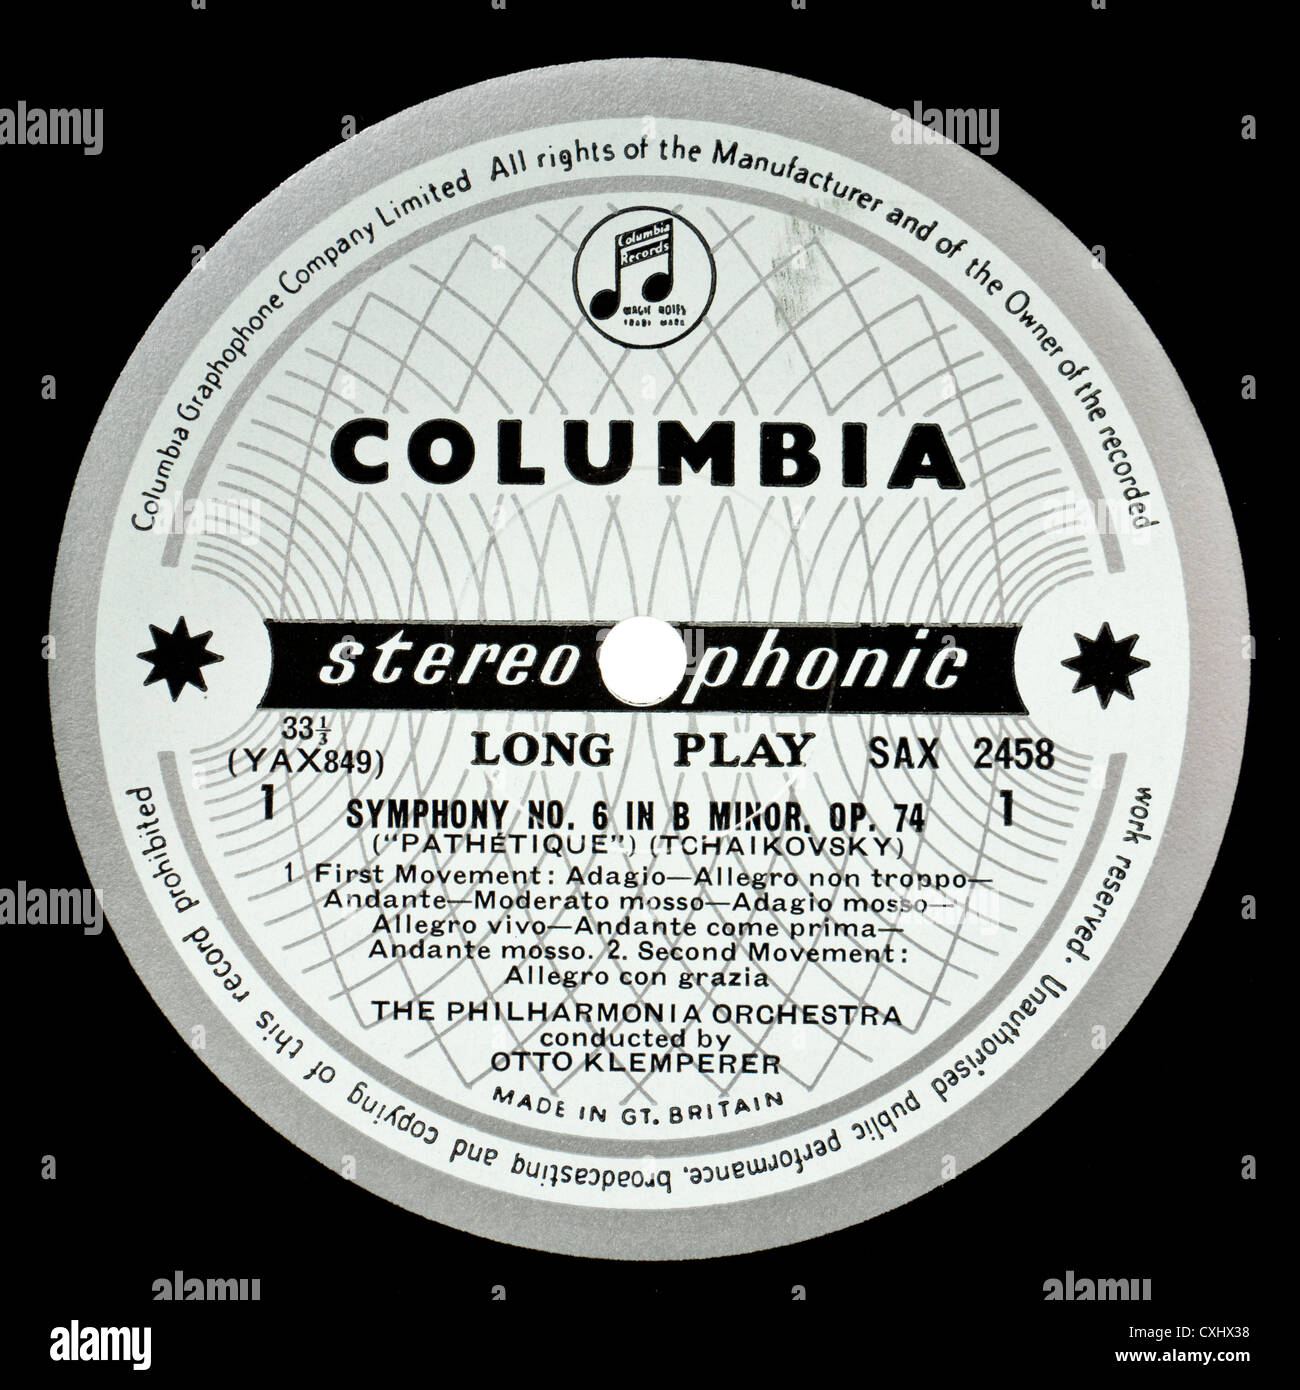 Beispiel für sehr seltene Columbia SAX 2458 klassischen Plattenlabel - Tschaikowsky "Pathetique" Sinfonie Nr. 6 Stockfoto